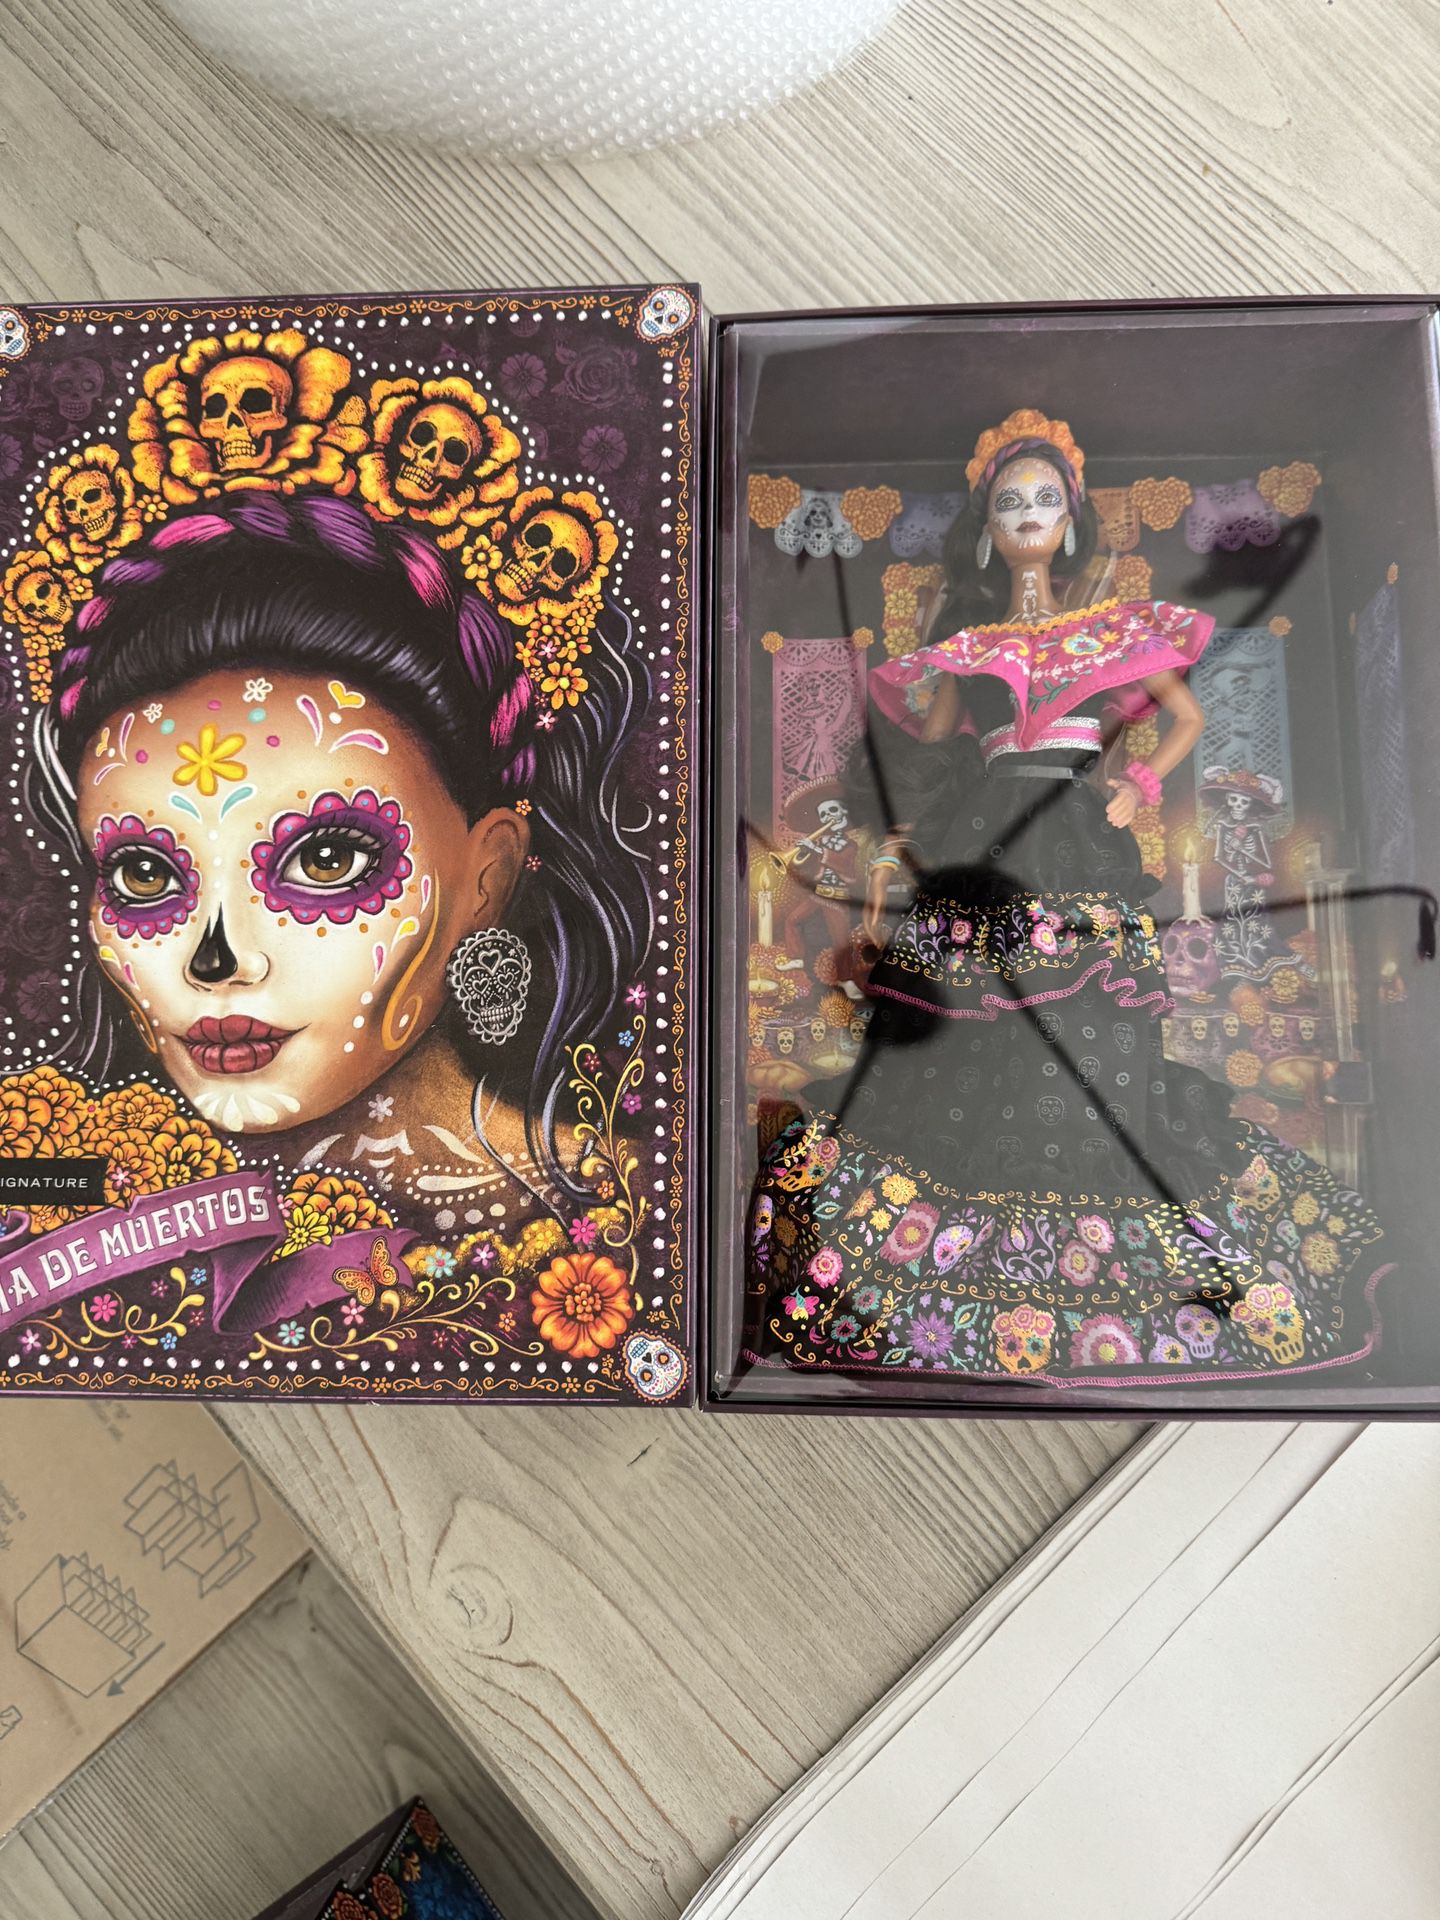 Set Of Dia De Los Muertos Barbies - Limited edition